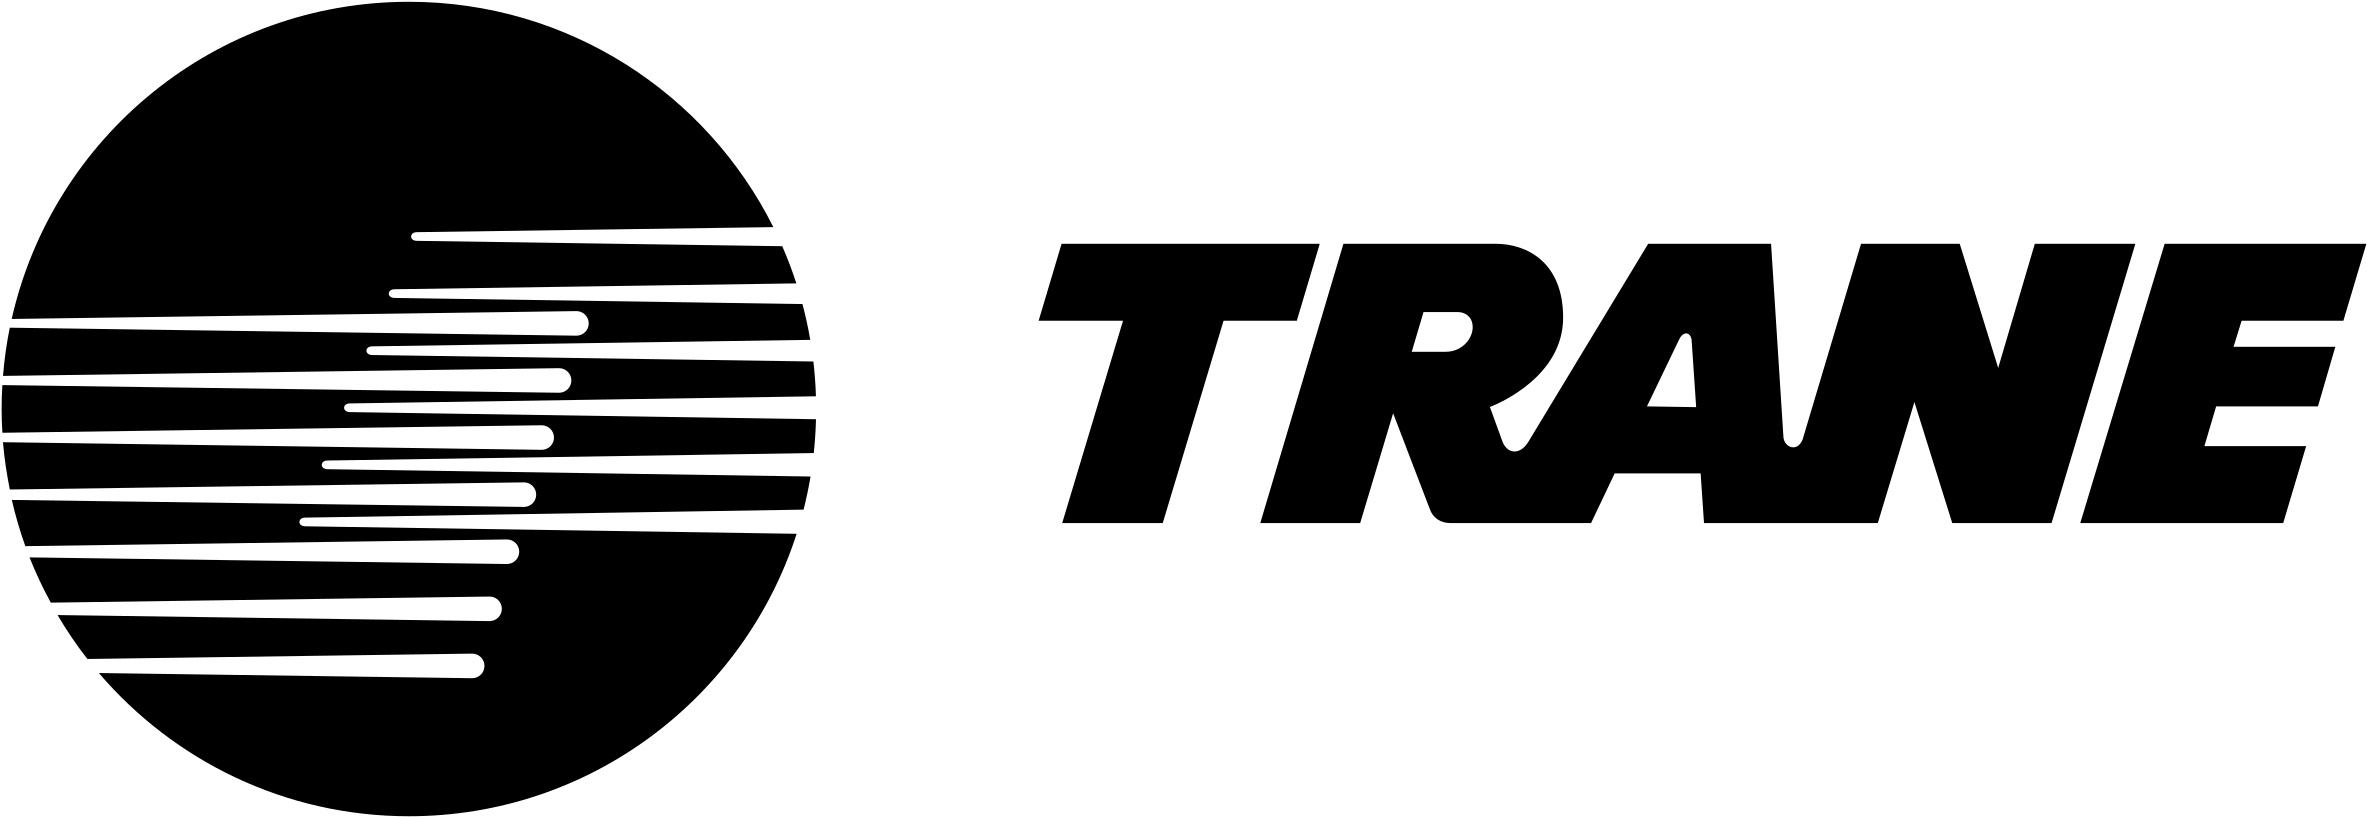 Trane Logo Png Transparent - Trane Ingersoll Rand Logo (2400x2400), Png Download